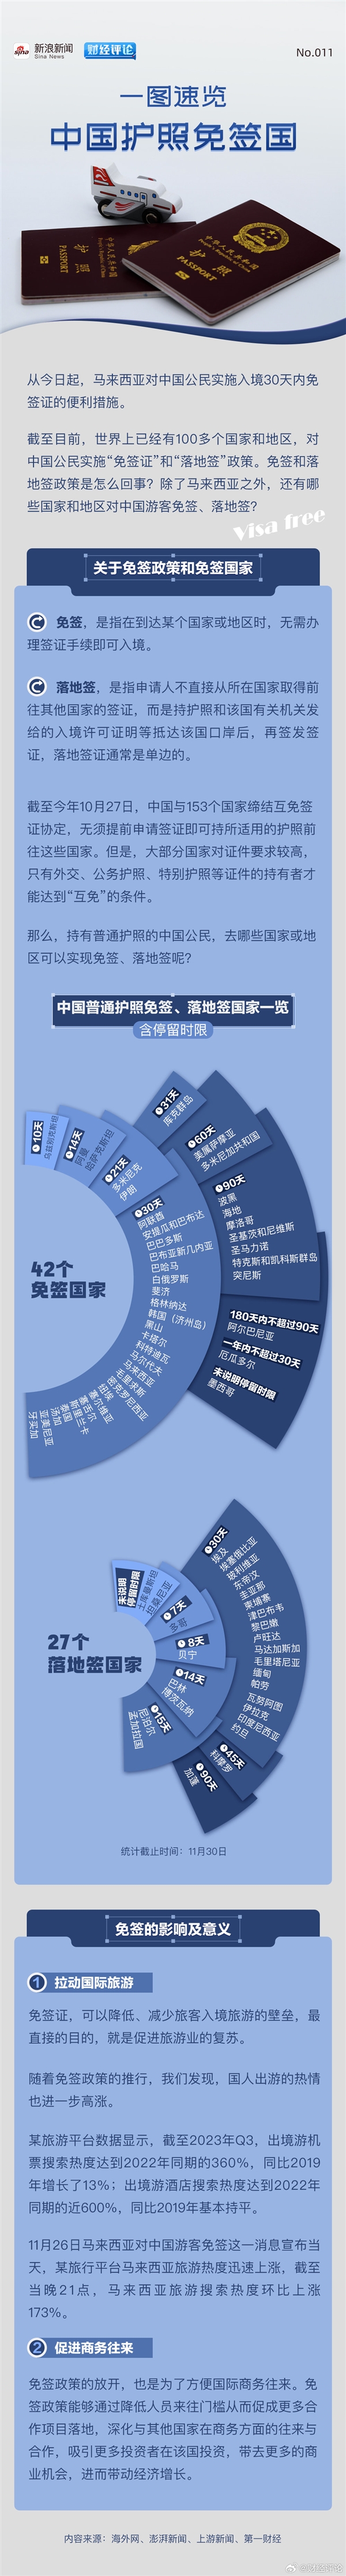 免签国一览！中国护照含金量提高：新马泰已全部对国人免签 搜索热度暴增-图2